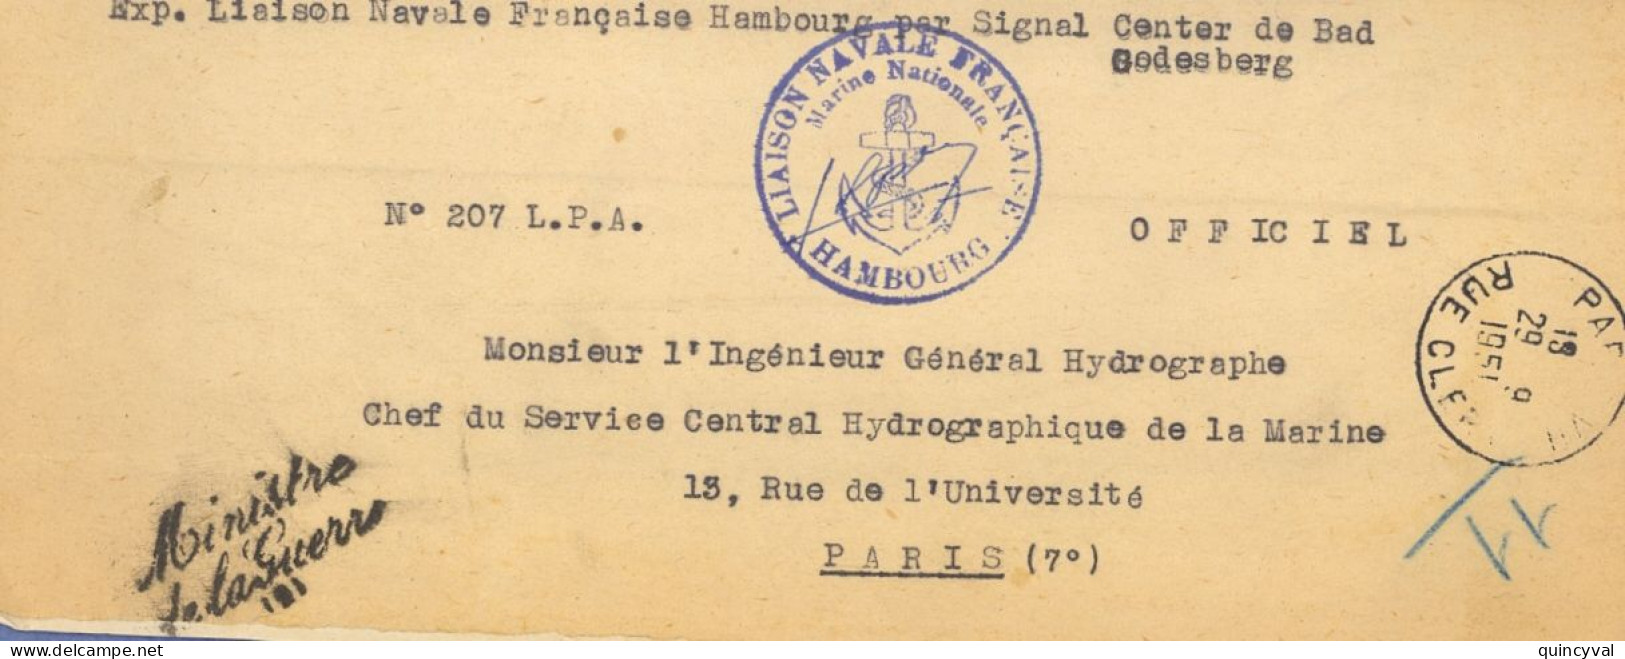 Liaison Navale Française Hambourg Signal Center  Bad Godesberg Griffe Ministre De La Guerre 1951 Paris Clery Ancre - Naval Post